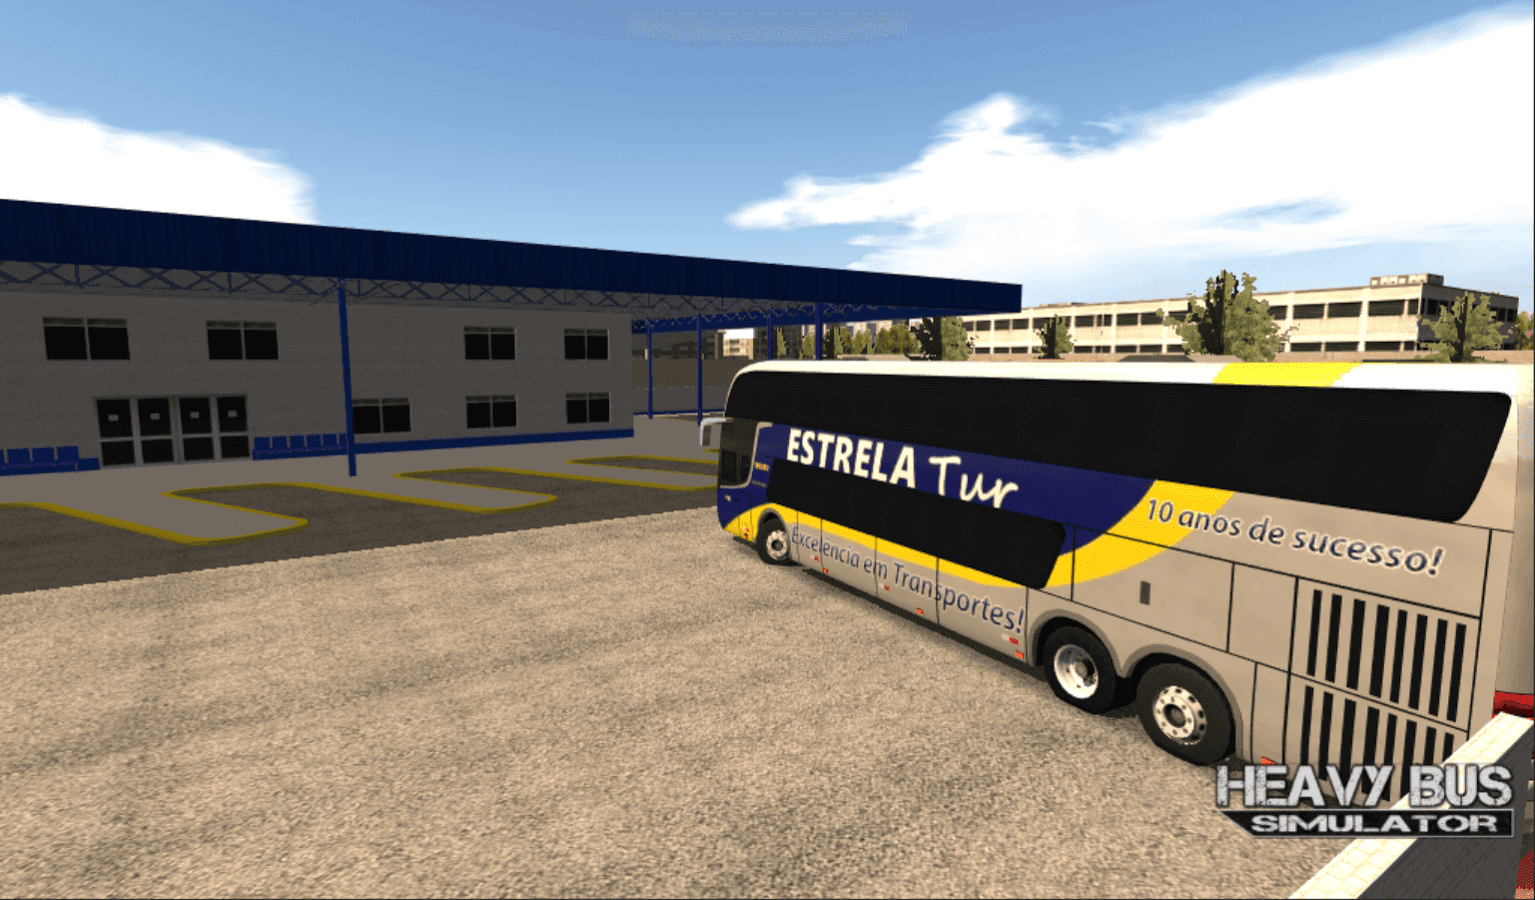 Heavy Bus Simulator APK MOD Dinheiro Infinito v 1.088